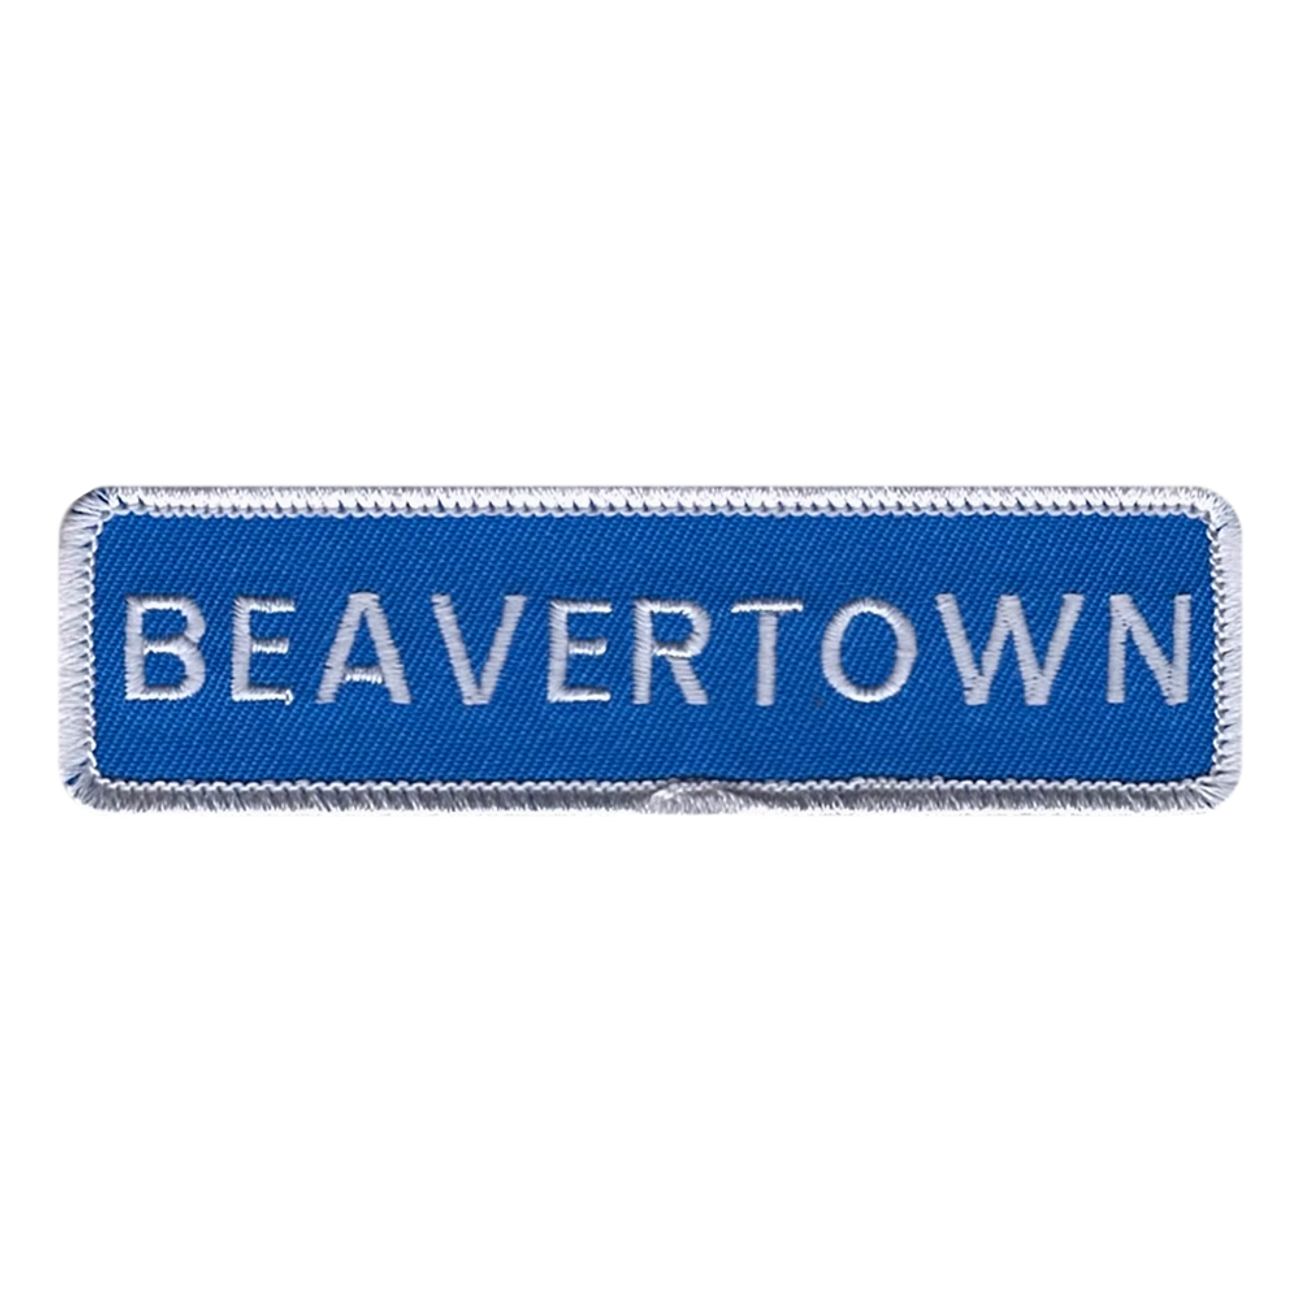 beavertown-vagskylt-tygmarke-100629-1